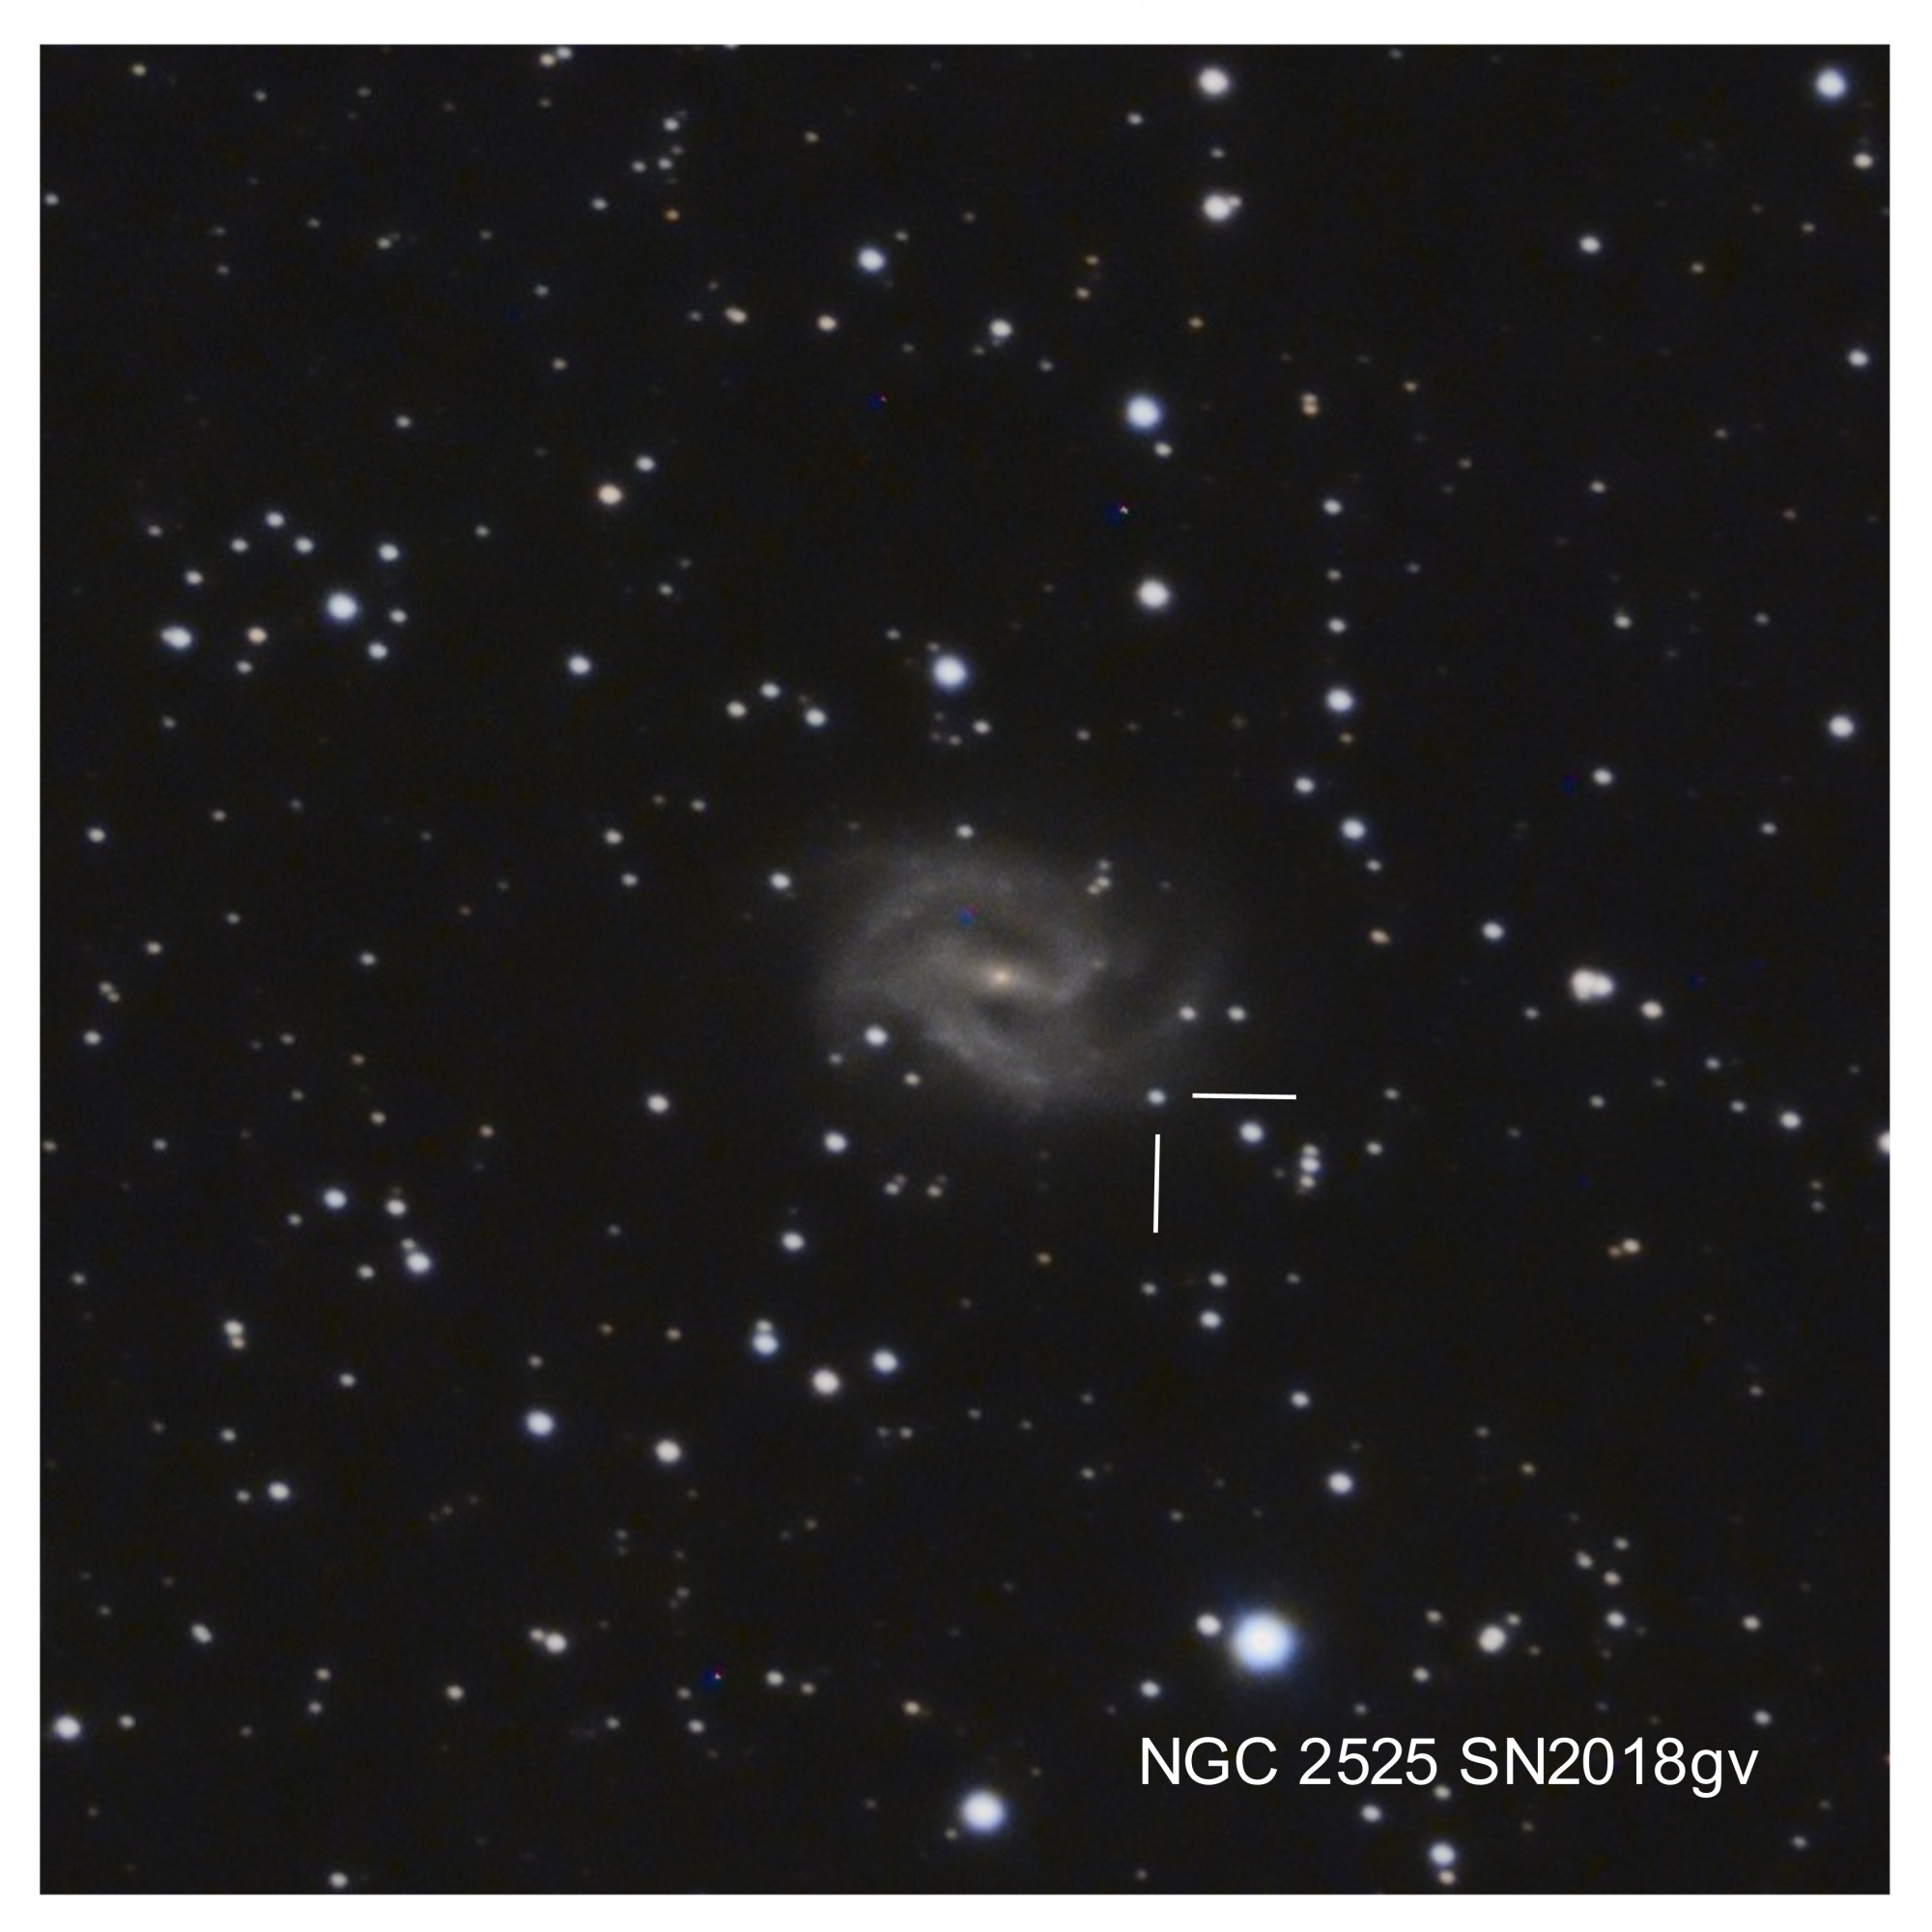 5ae709ecbb79e_NGC2525SN2018gvcrop.thumb.jpg.6549cf1601b8e167bc10327684504a25.jpg